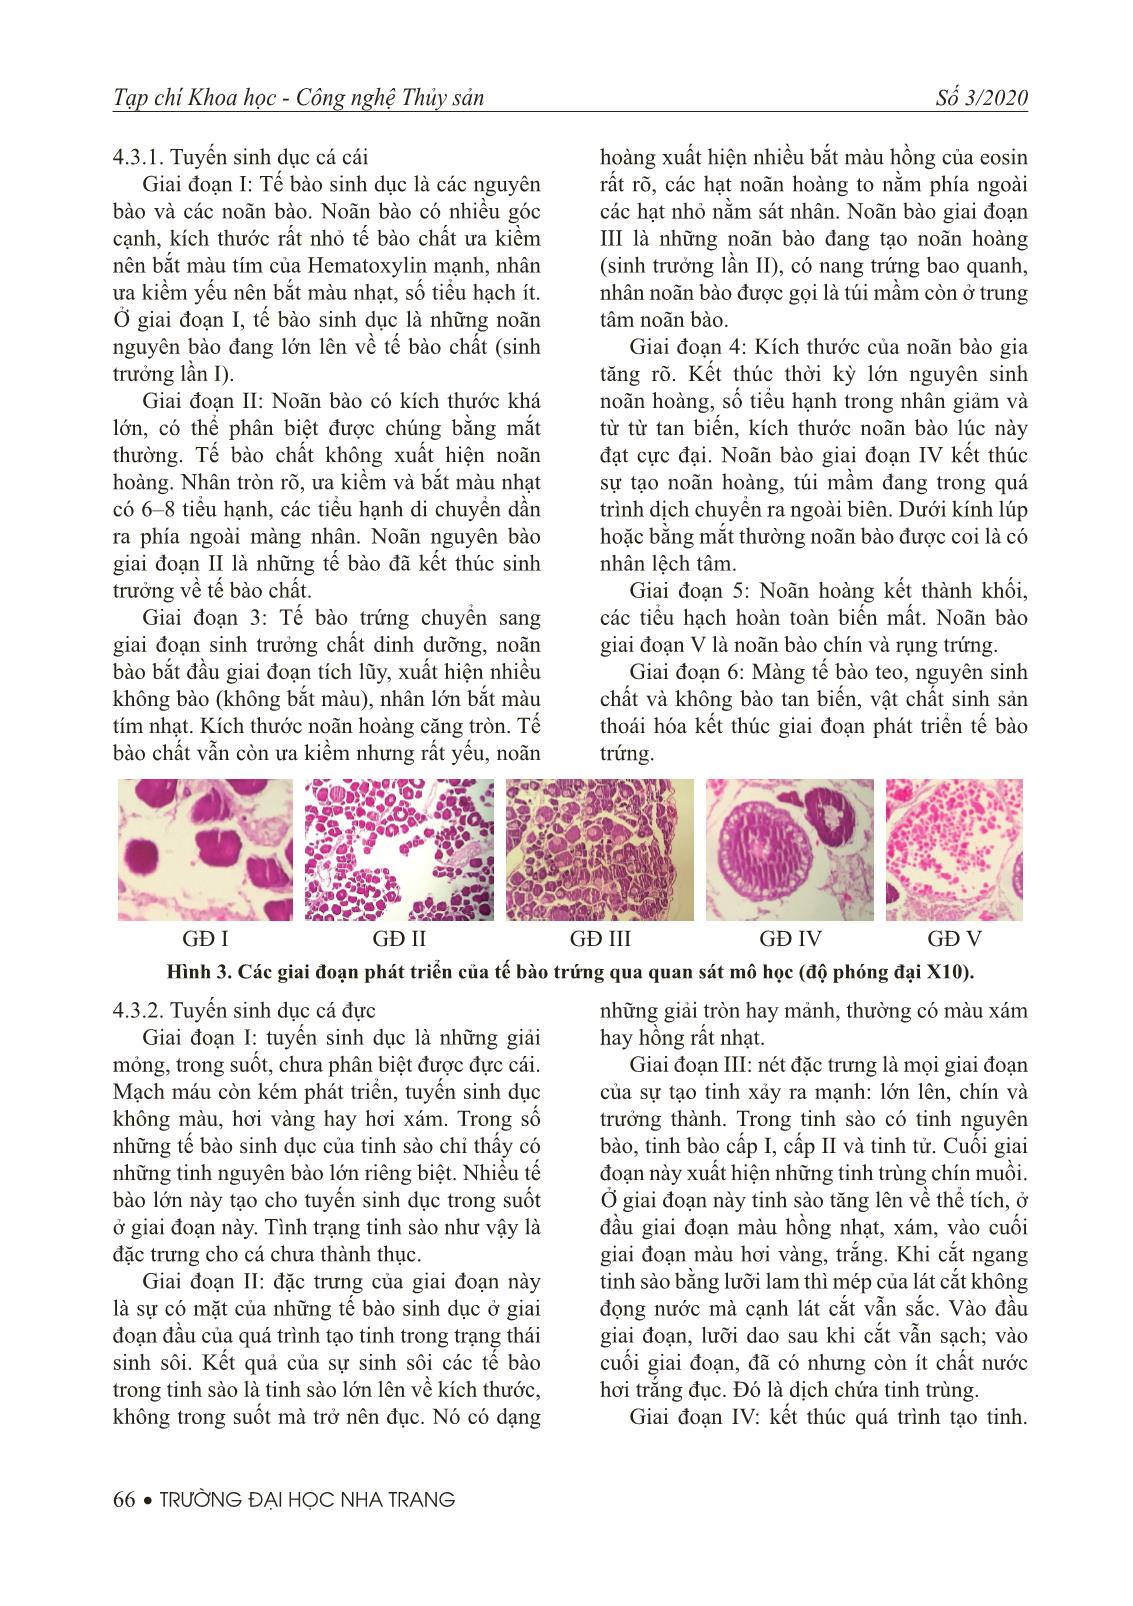 Khảo sát và theo dõi sự phát triển tuyến sinh dục của cá tỳ bà bướm beo (Sewellia elongate Roberts, 1998) trong điều kiện nuôi nhân tạo trang 7